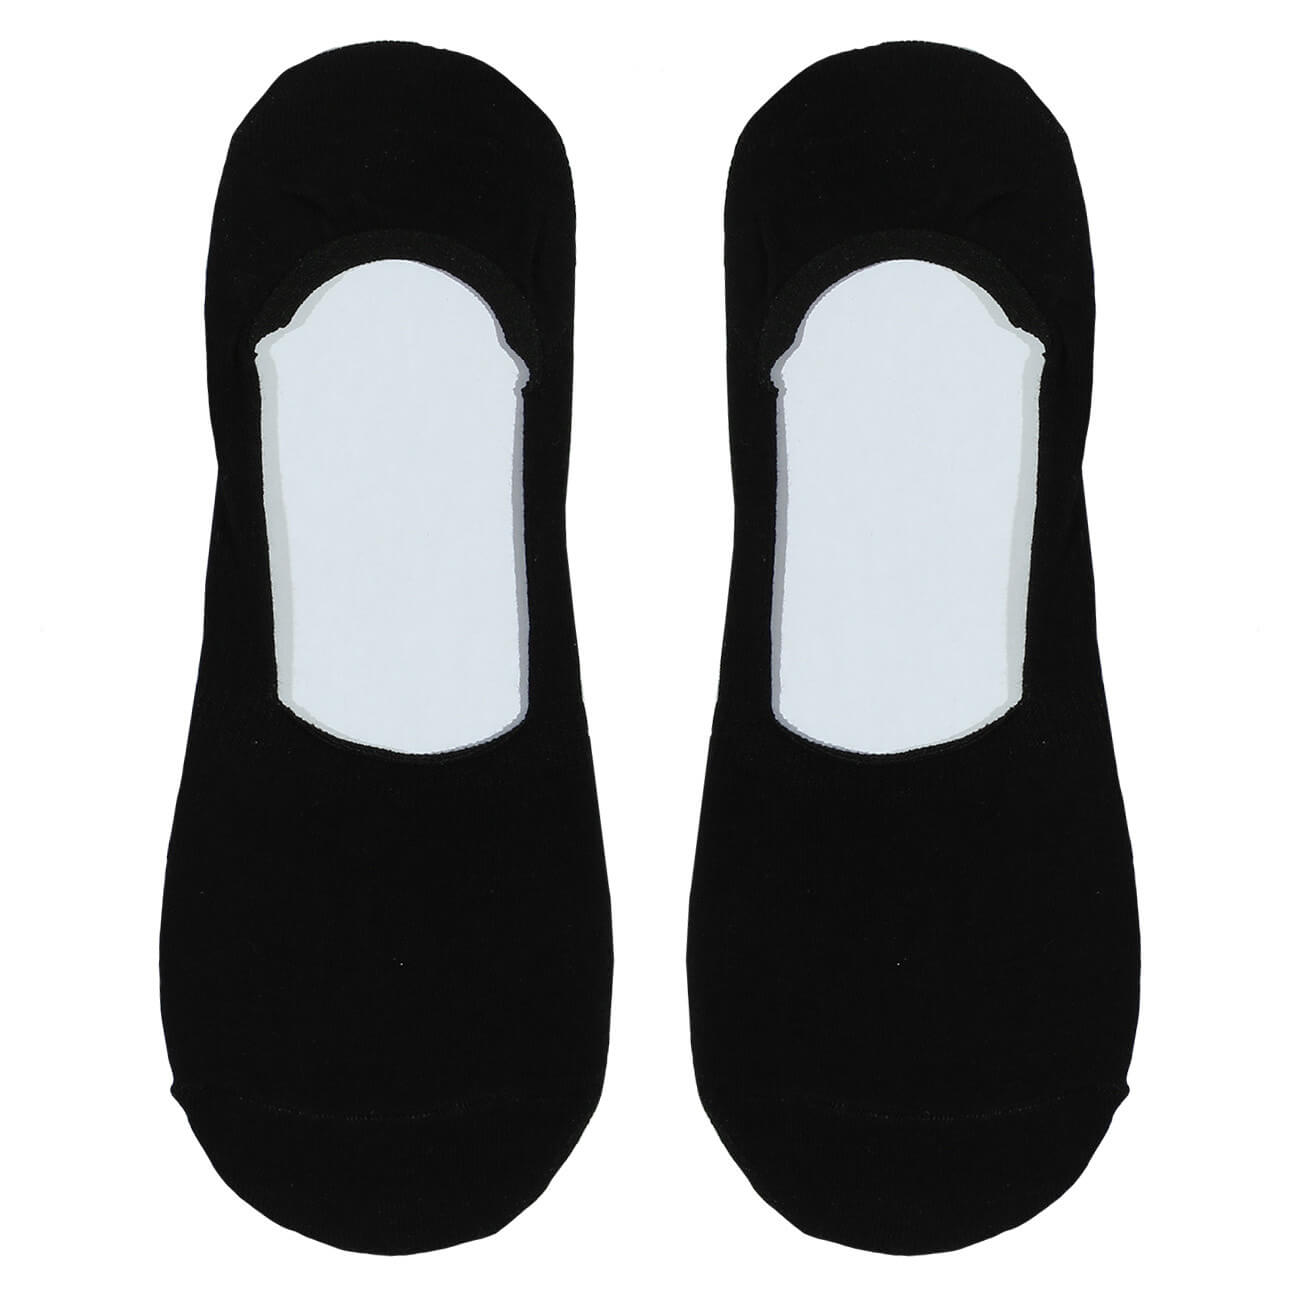 Носки-следки женские, р. 36-38, хлопок/полиэстер, черные, Basic носки женские р 36 38 хлопок полиэстер серые basic